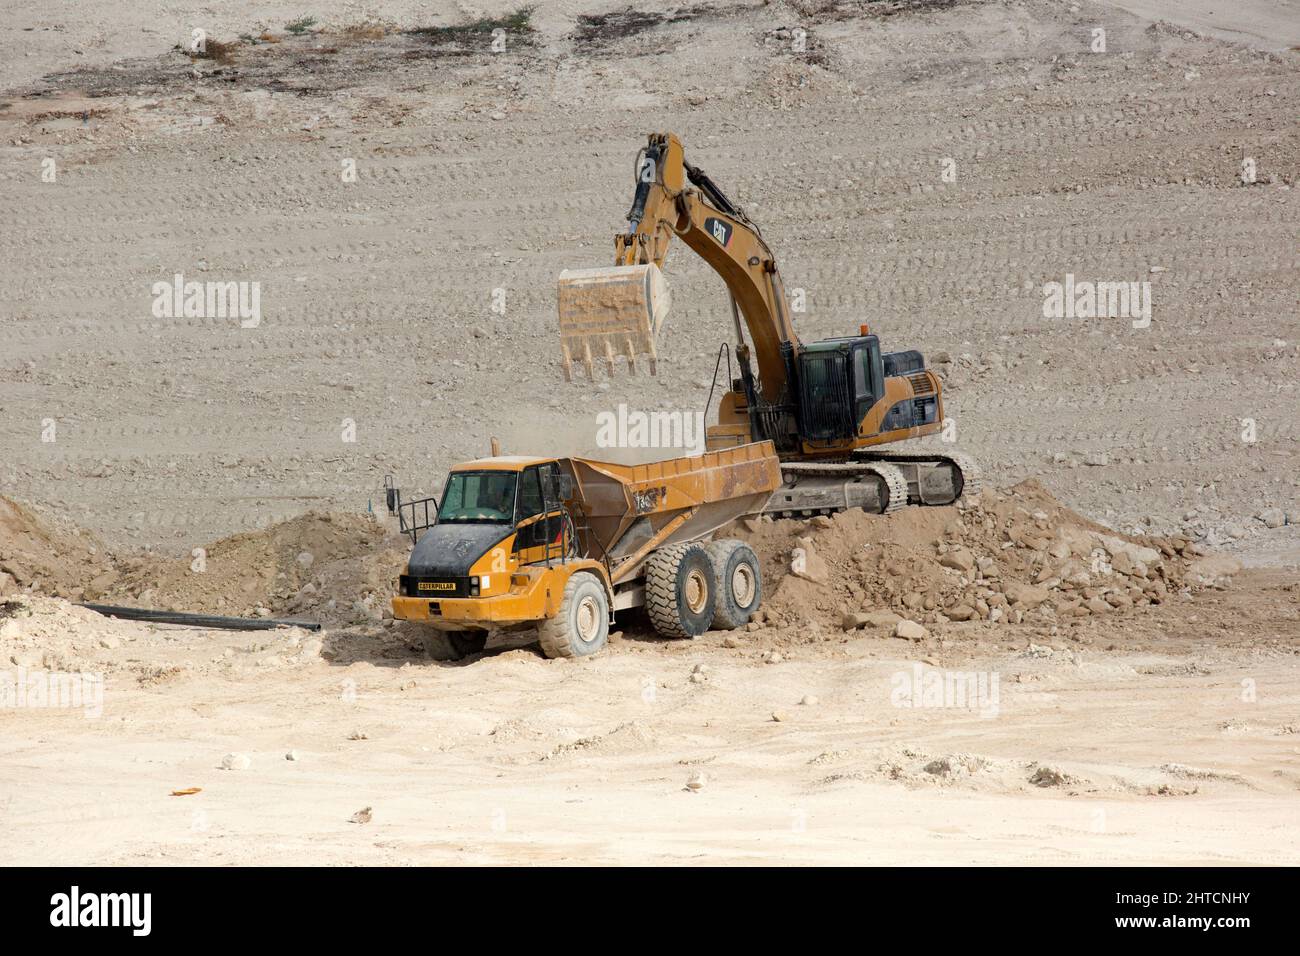 Équipements de terrassement lourds permettant de dégager le sol pour un projet de génie civil à grande échelle Banque D'Images